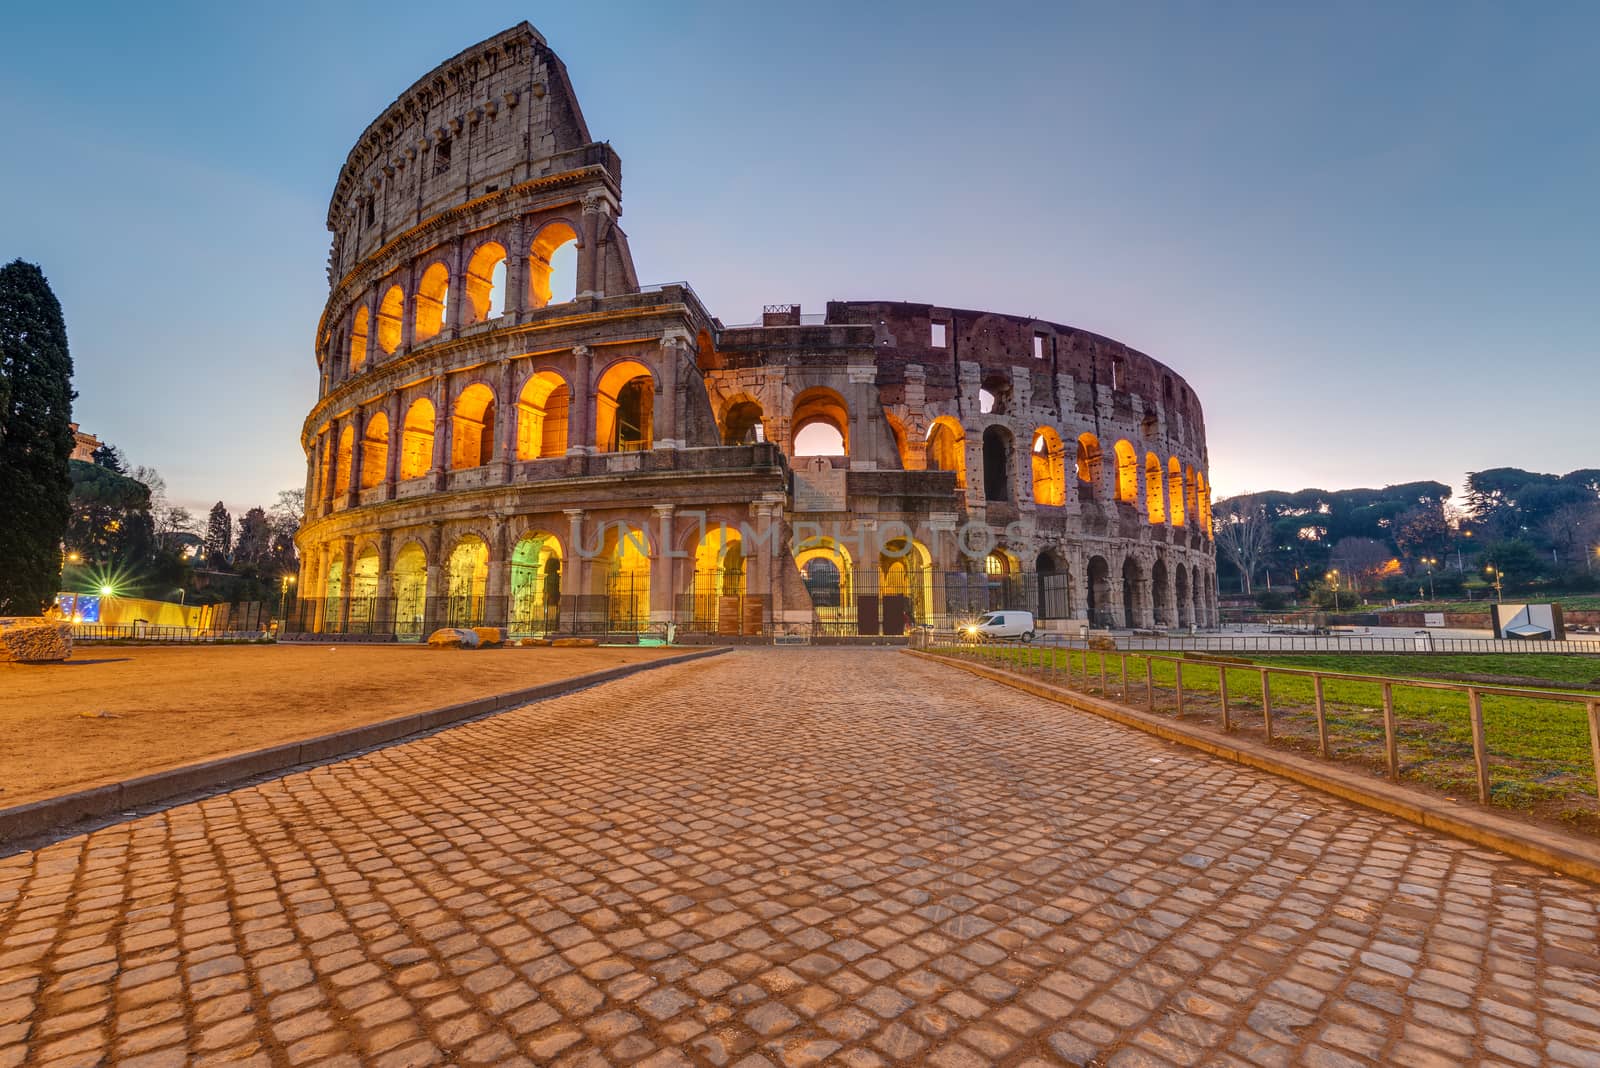 The imposing roman Colesseum in Rome before sunrise